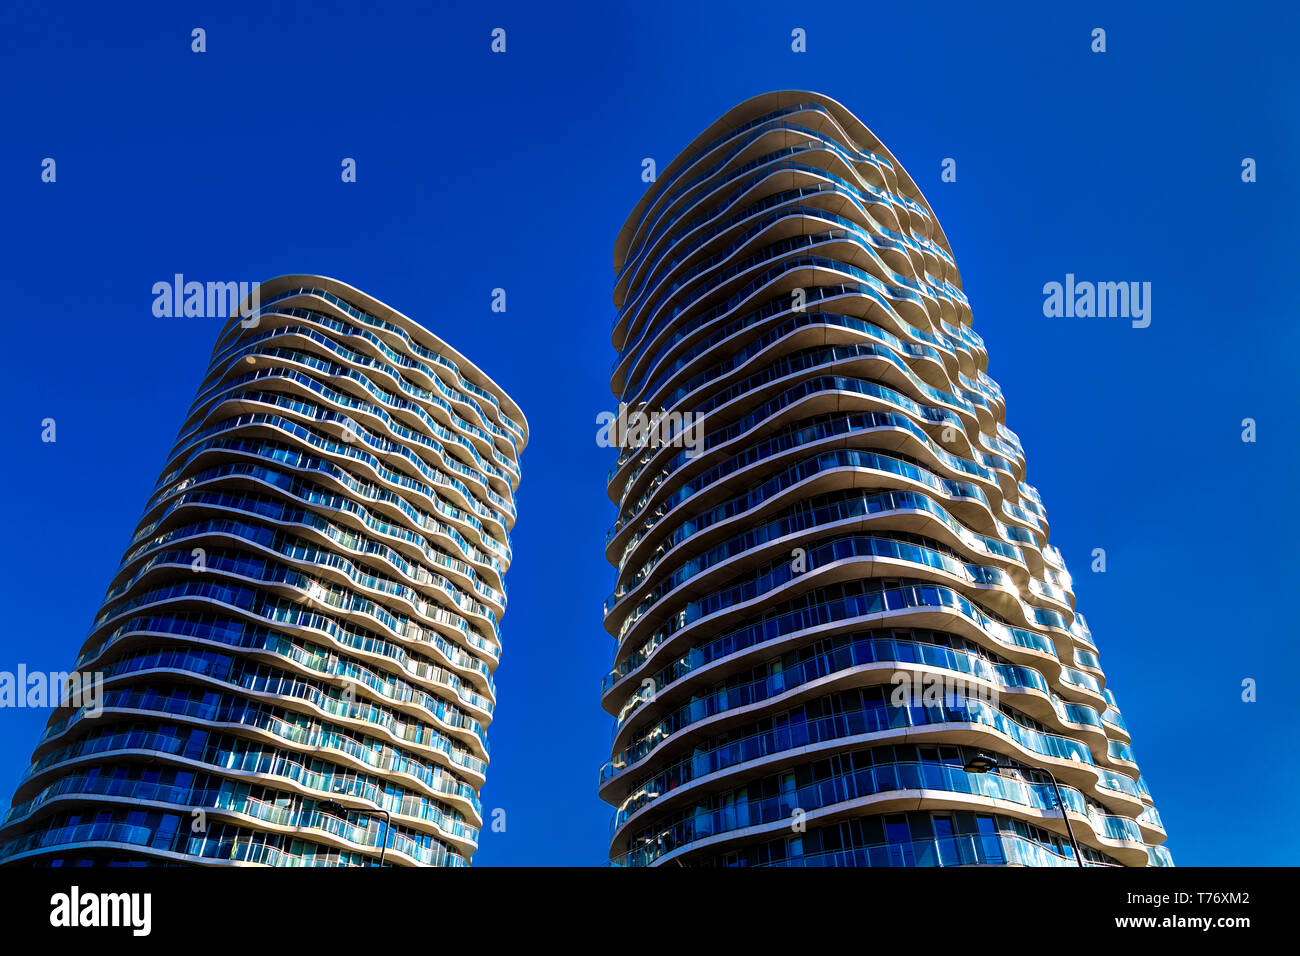 Der Hoola Gebäude Wohn- hoch aufragenden Türmen in Canning Town, London, UK Stockfoto